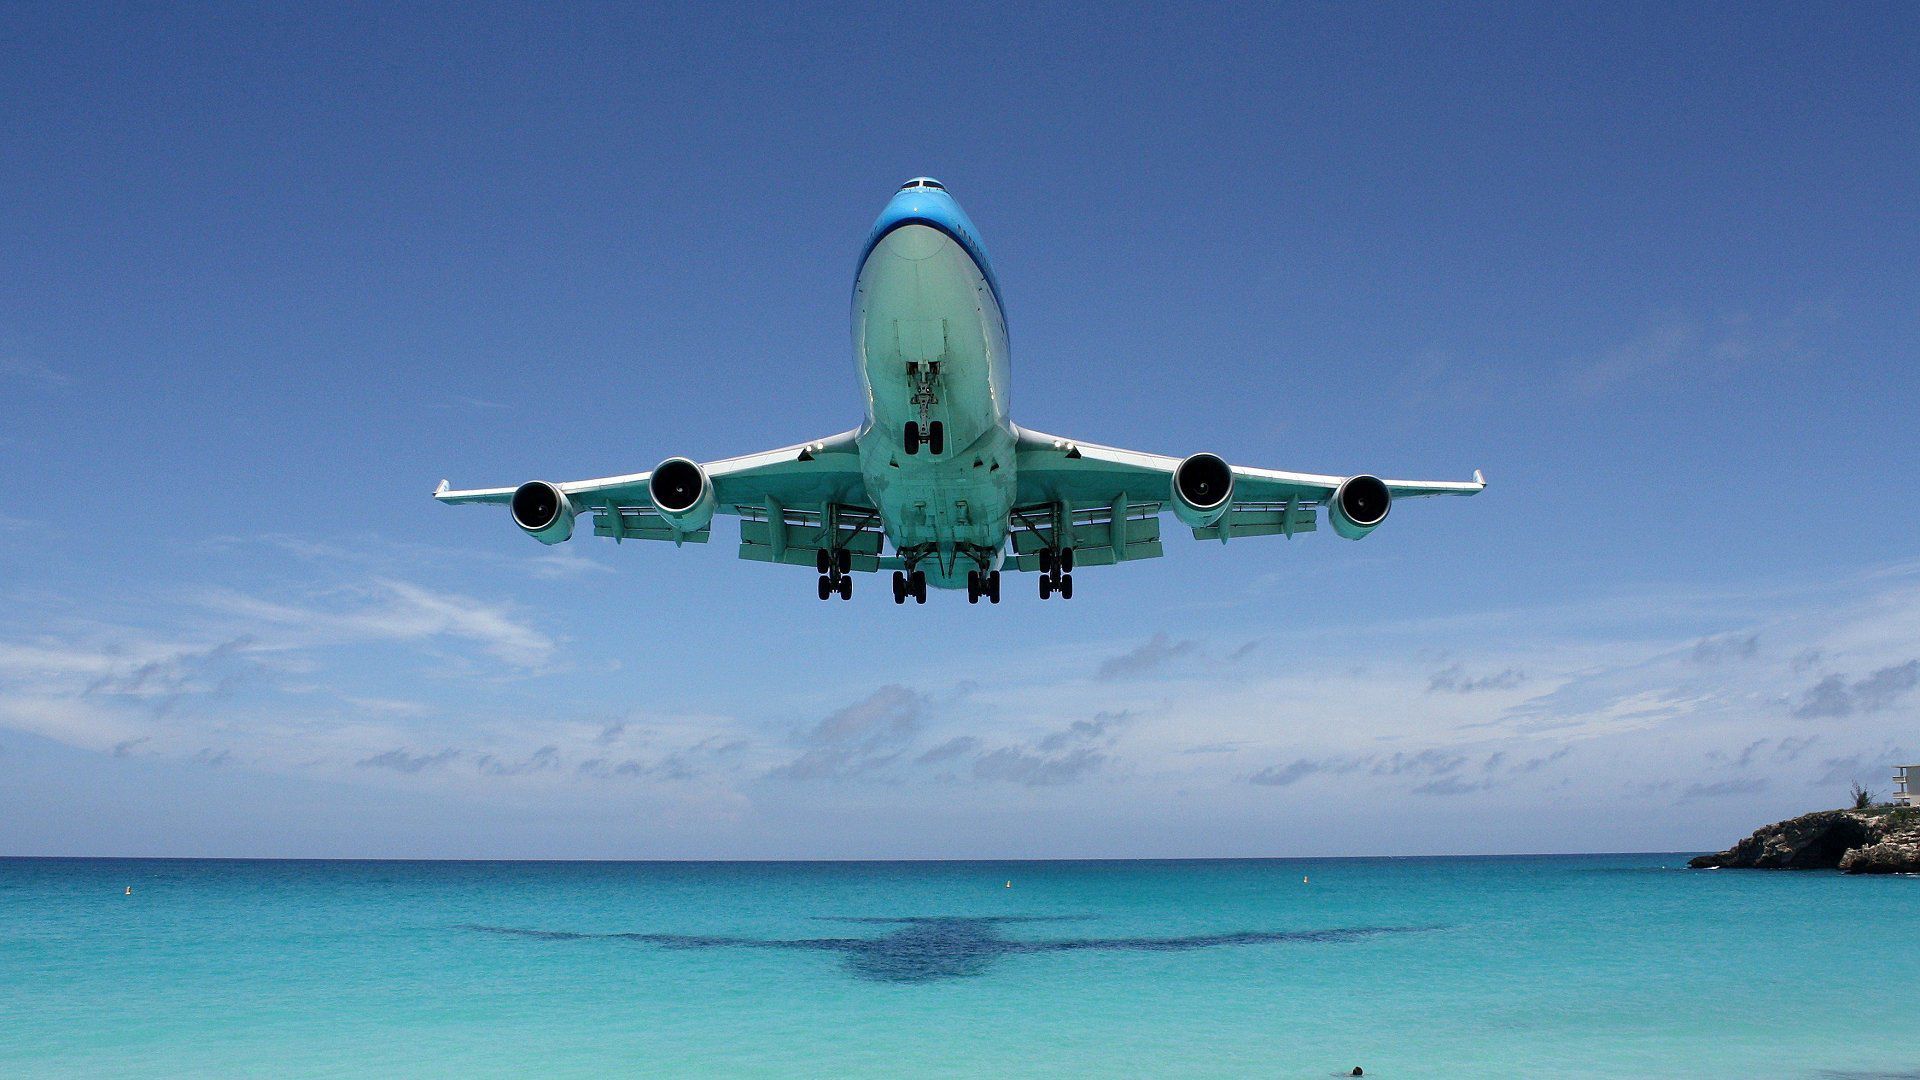 Скачать обои бесплатно Полет, Boeing 747, Тень, Океан, Разное картинка на рабочий стол ПК